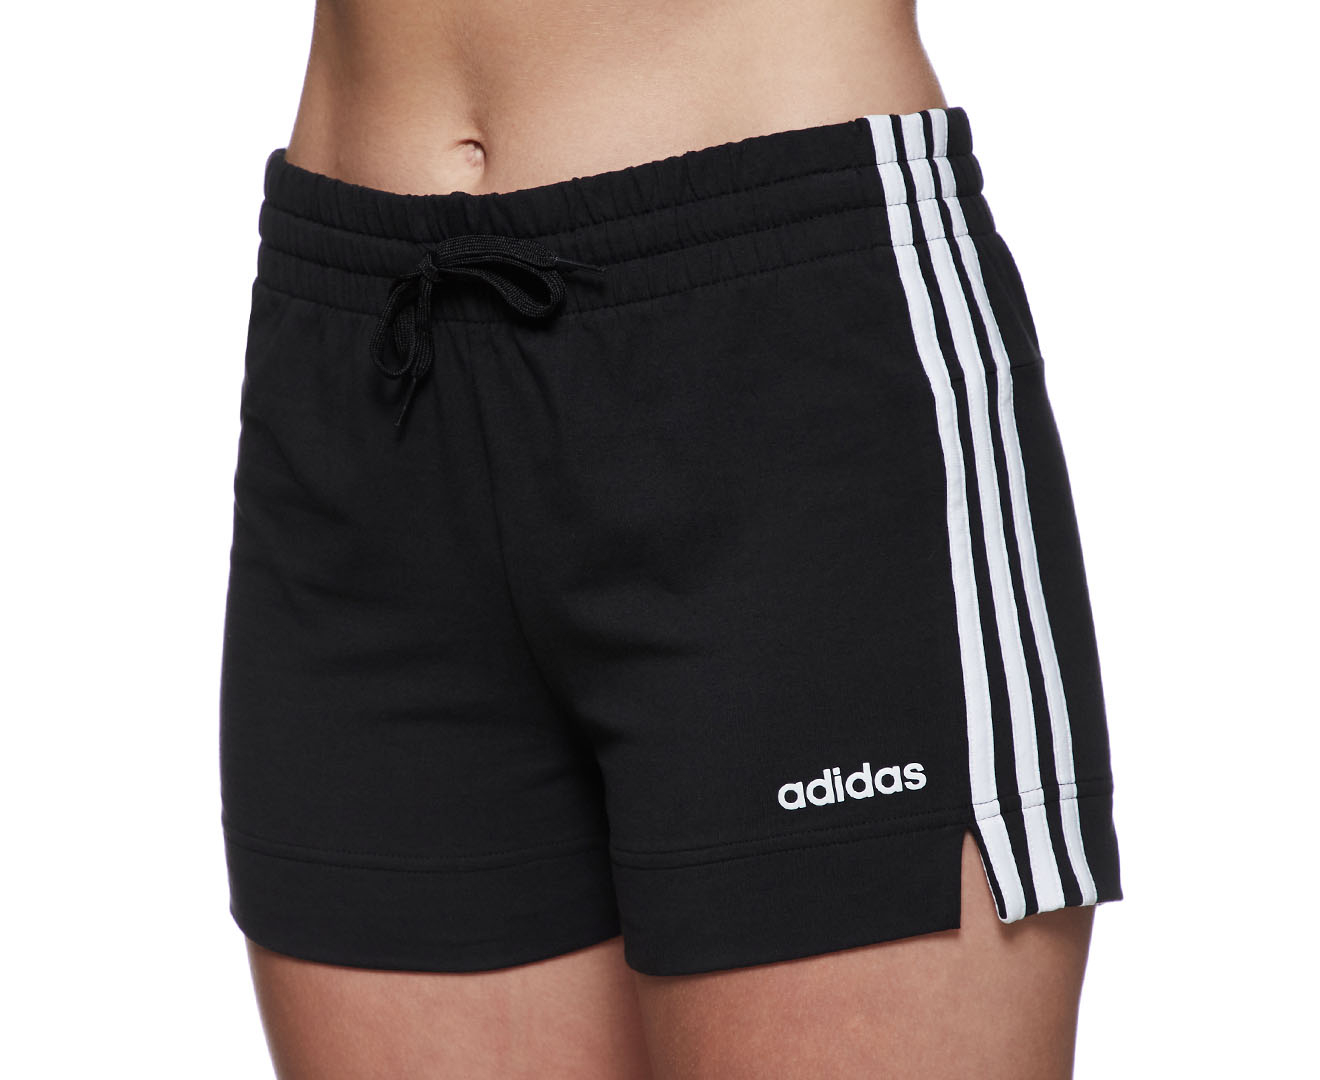 Adidas Women's Essentials 3-Stripe Shorts - Black/White | Catch.com.au